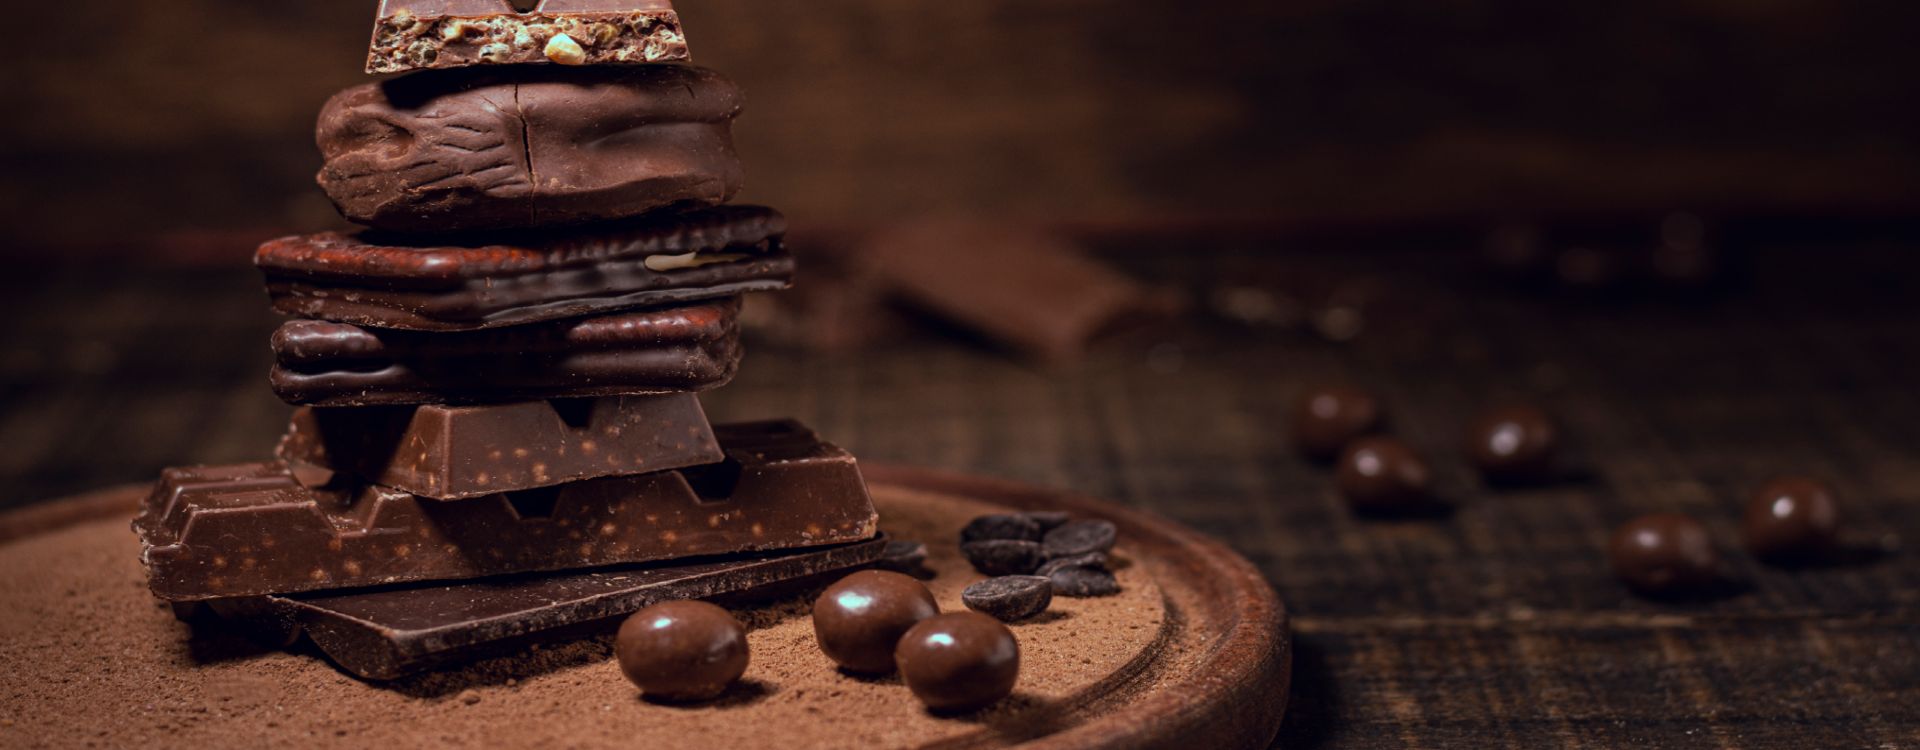 Socola đen nguyên chất đắng 100 cacao không đường Figo  Chocolate